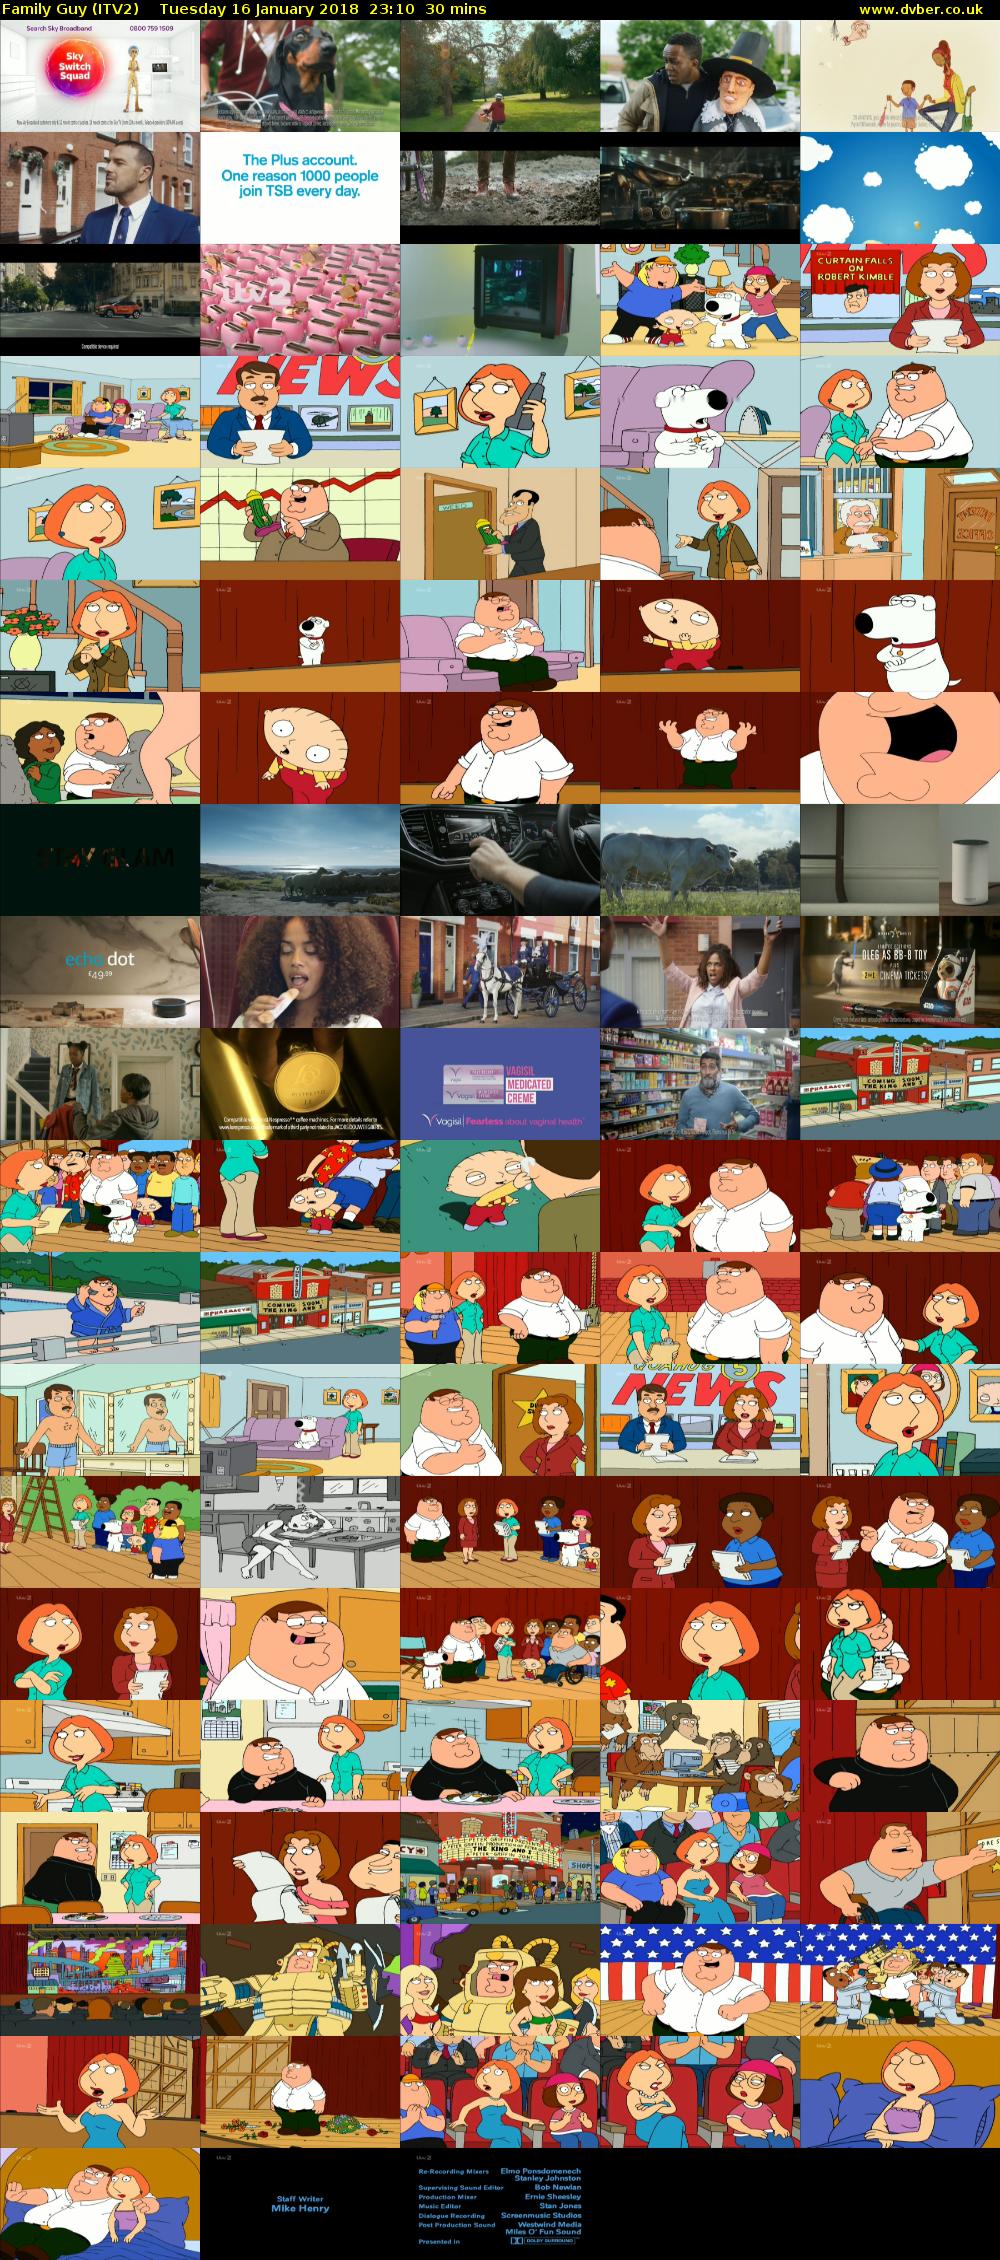 Family Guy (ITV2) Tuesday 16 January 2018 23:10 - 23:40